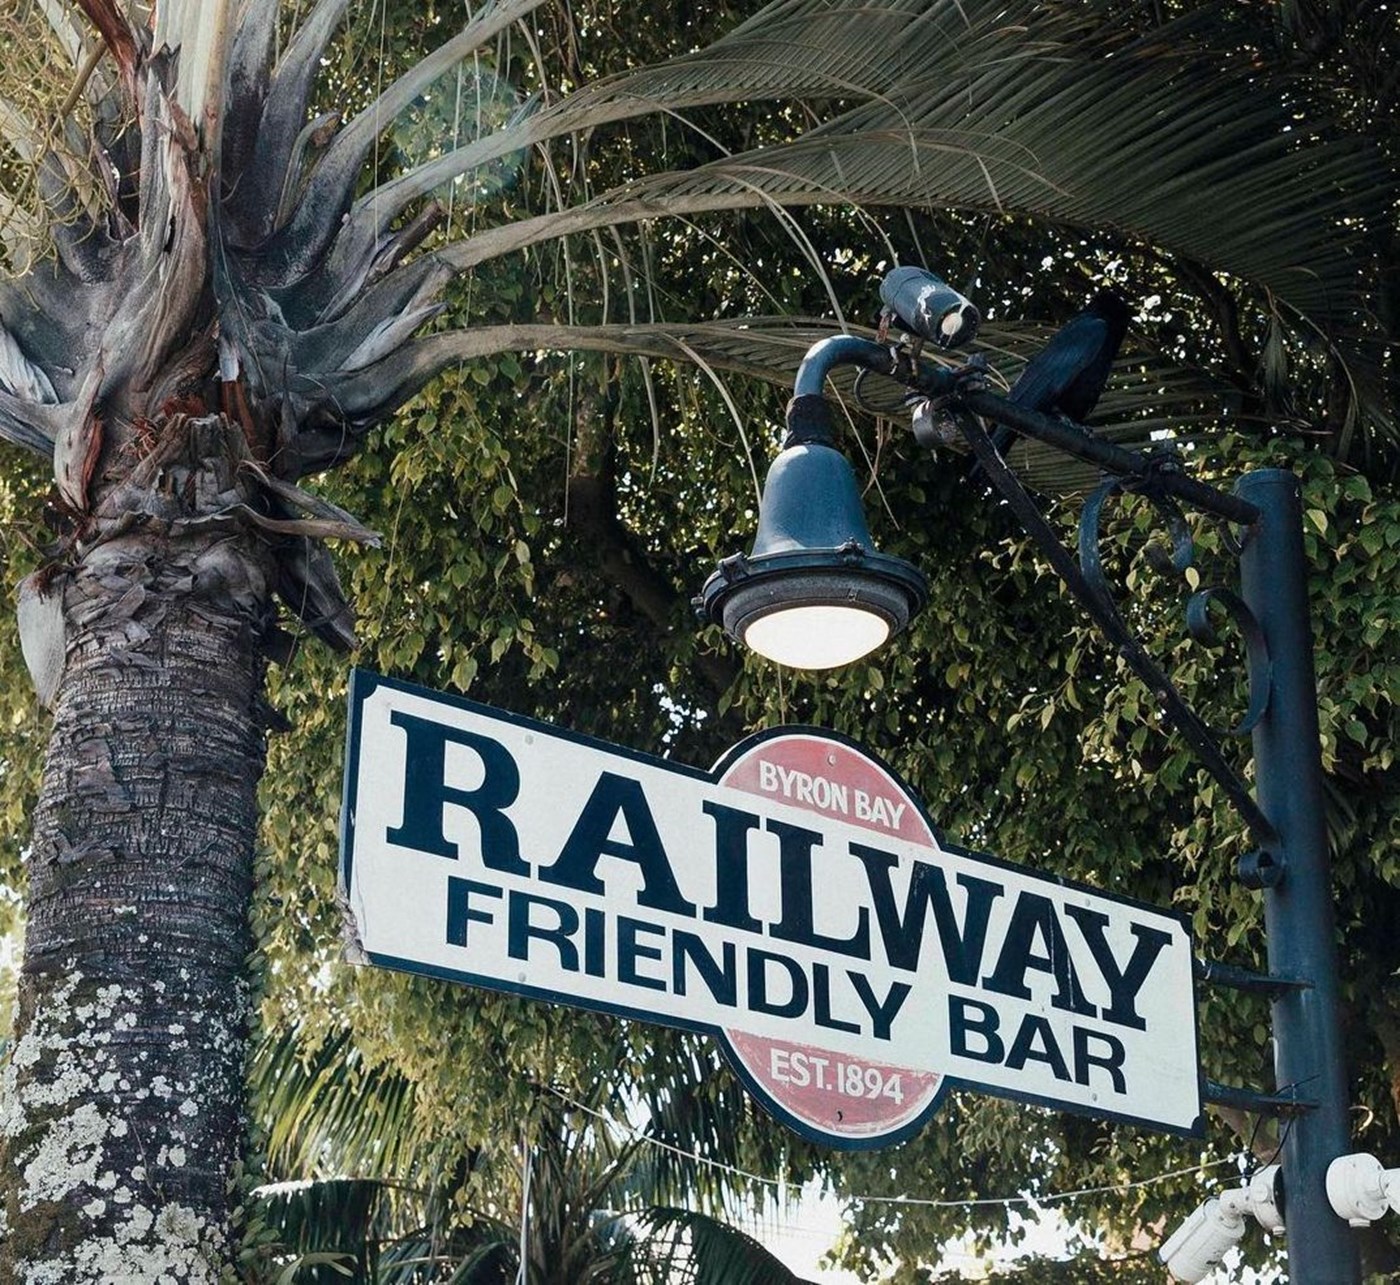 Signage that says "Railway Friendly Bar" at The Rails Hotel Byron Bay Sydney